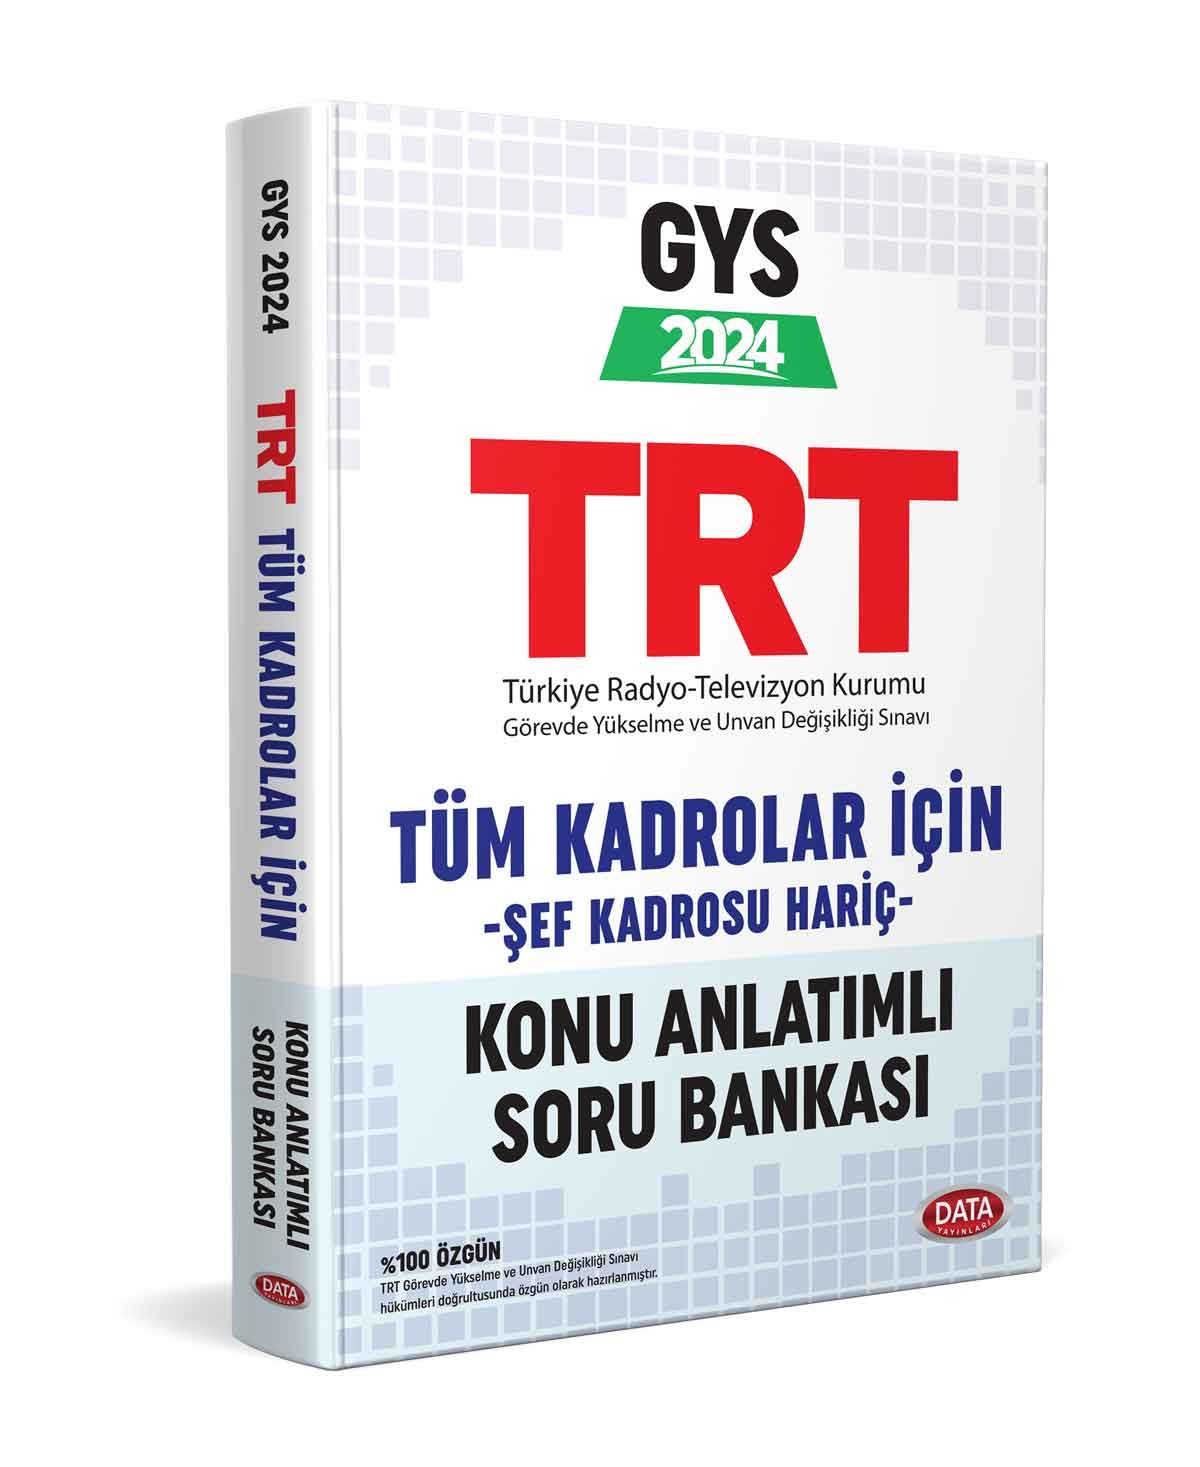 TRT Tüm Alanlar İçin GYS Konu Anlatımlı Soru Bankası (Şef Kadrosu Hariç)